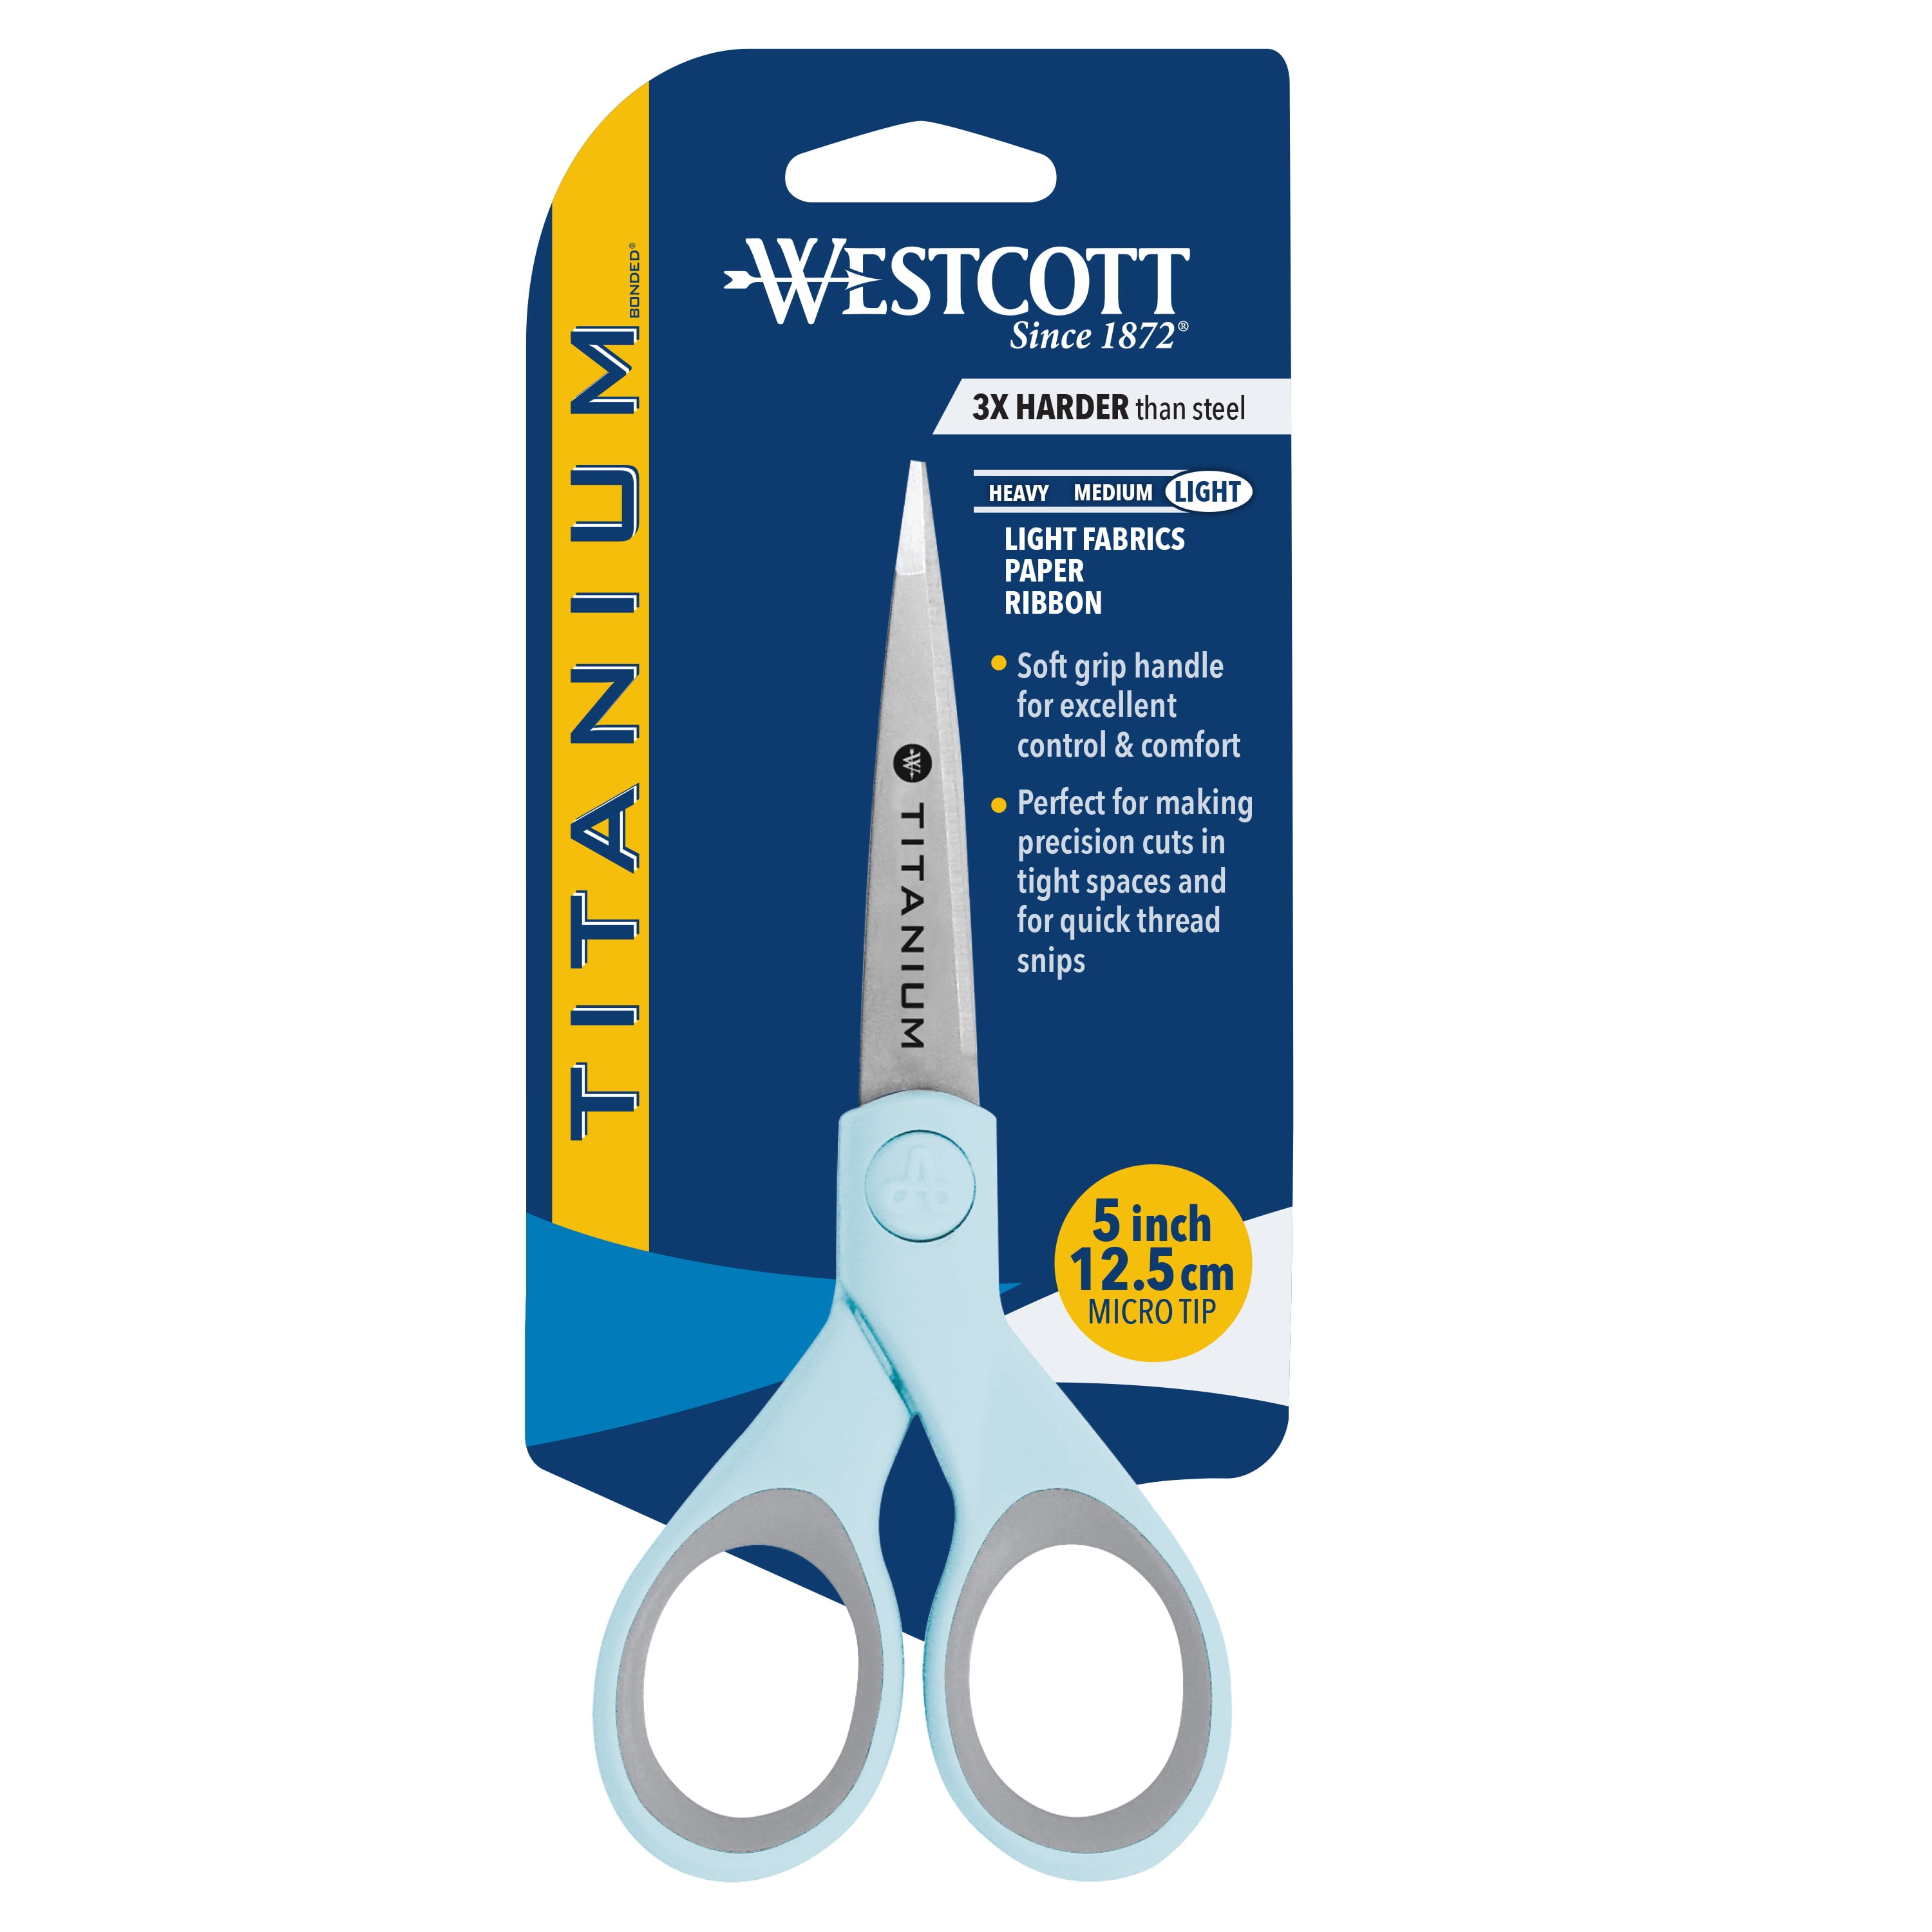 Westcott E-21592 00 Kids Scissor Witch cm-scale blunt tip 513cm Blue FAST&FREE 